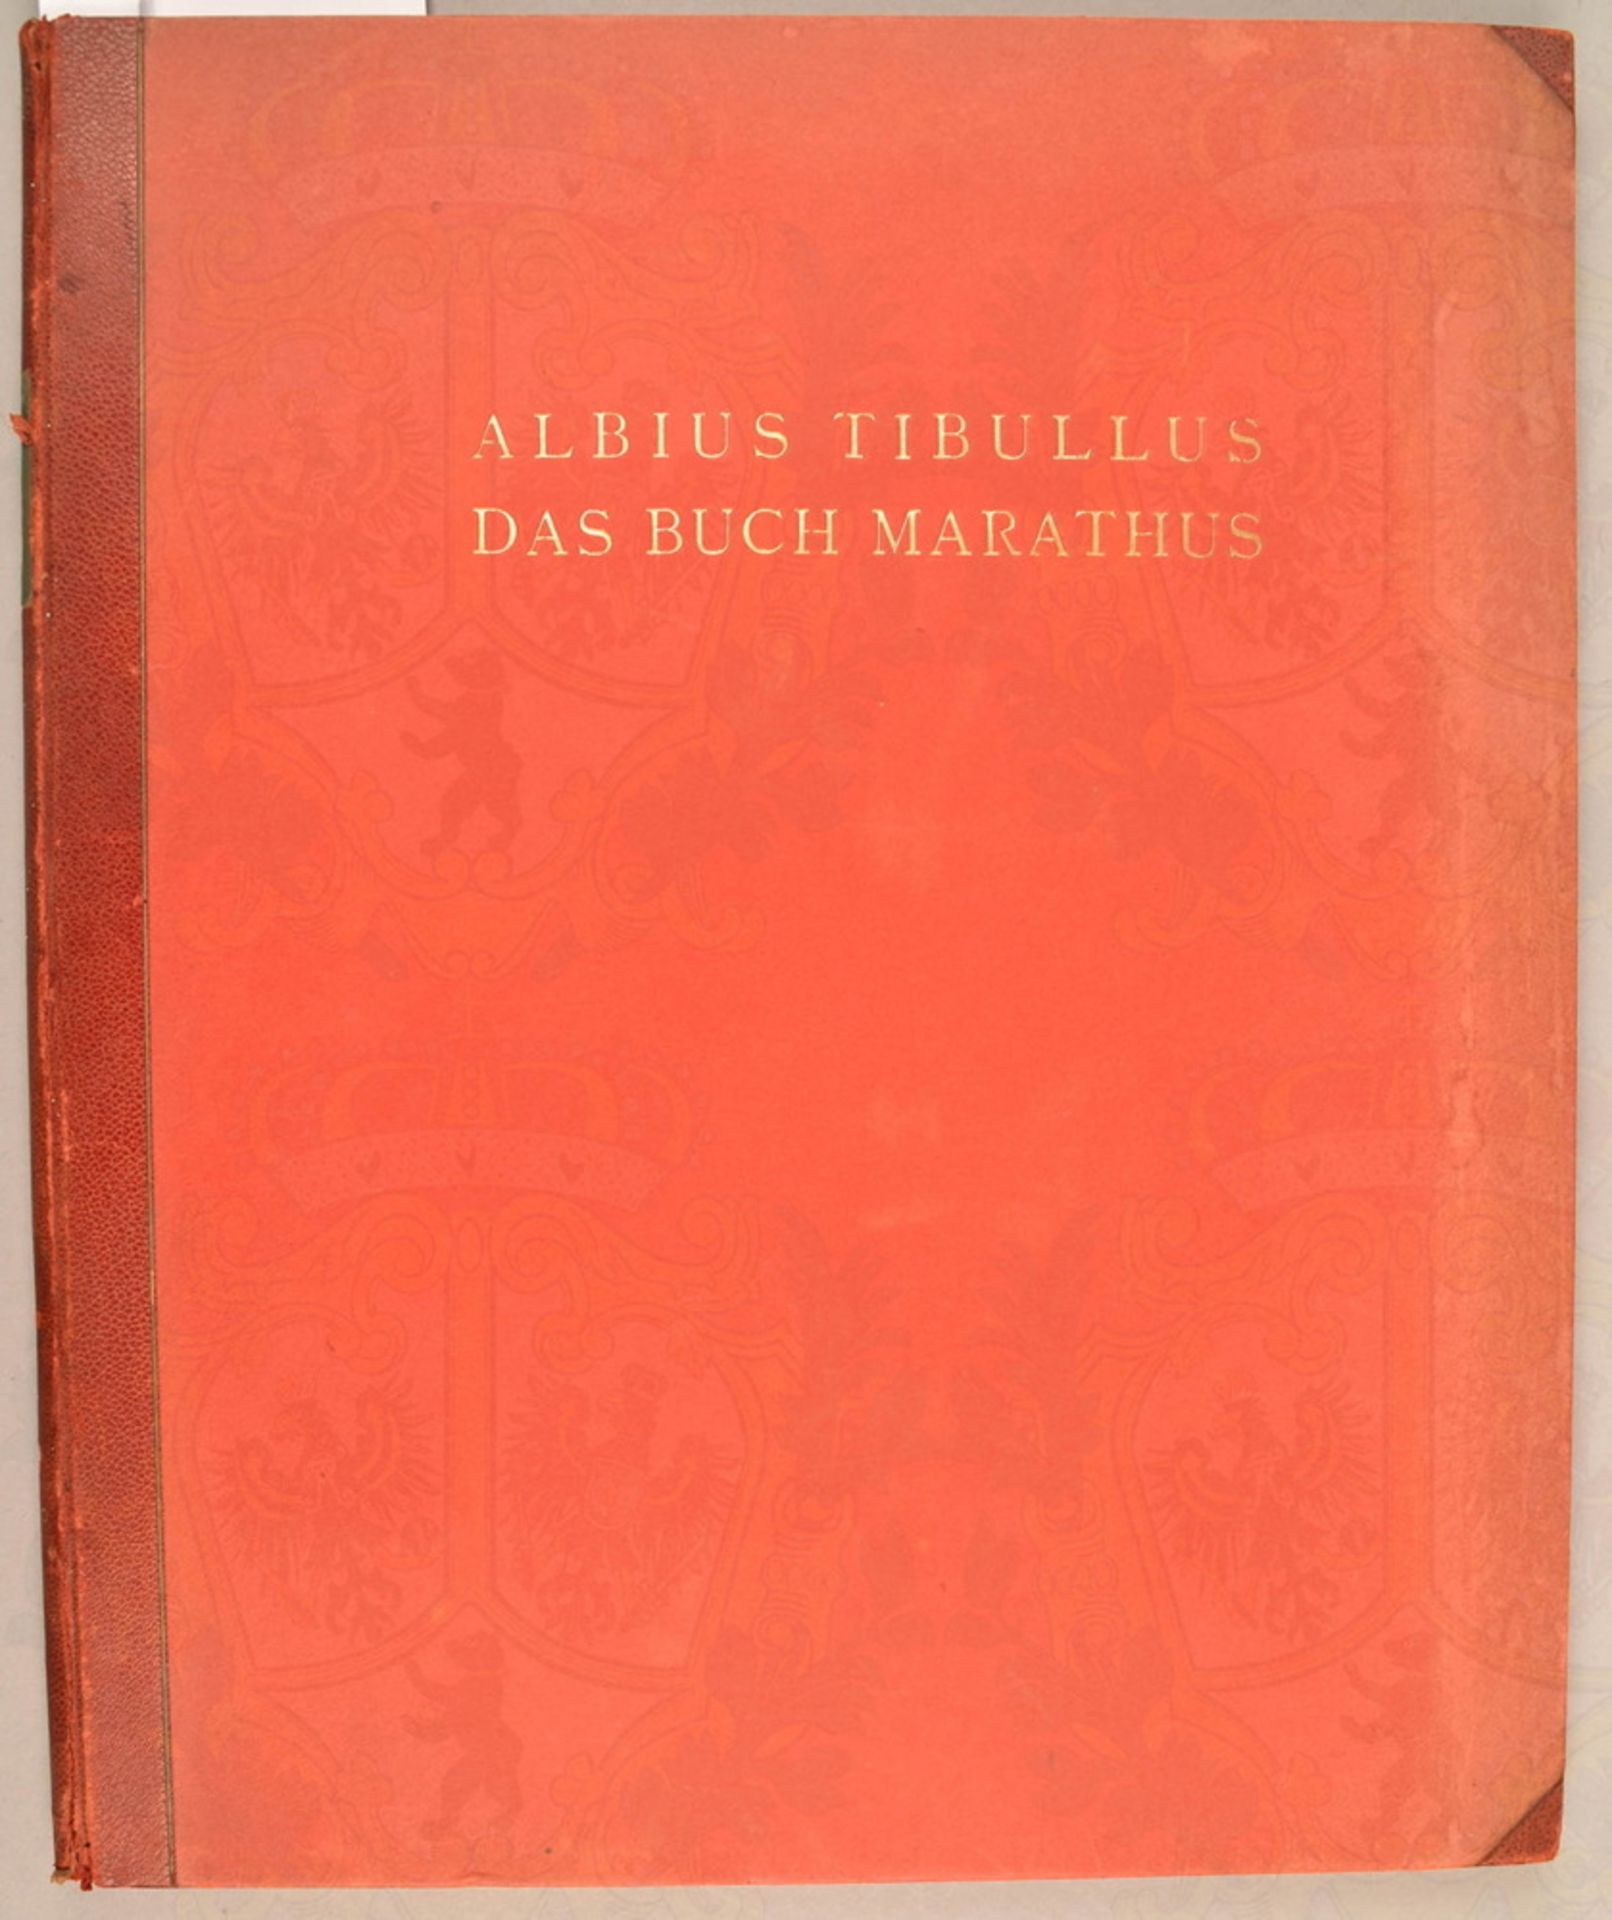 Albius Tibullus - The Marathus Book 1923